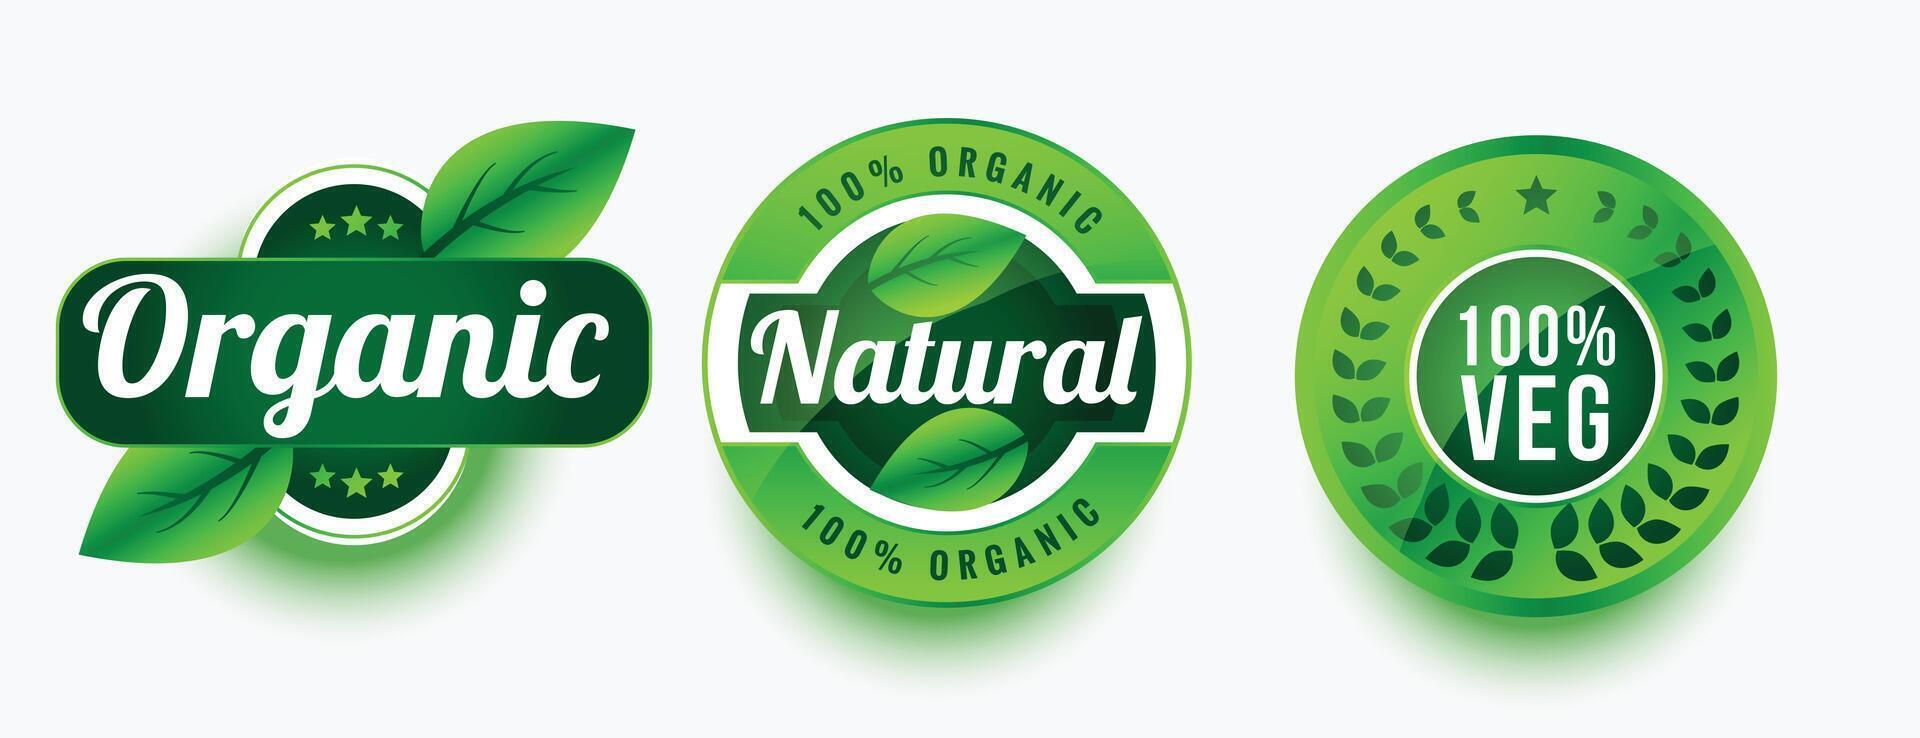 organisk naturlig veg produkt etiketter uppsättning design vektor